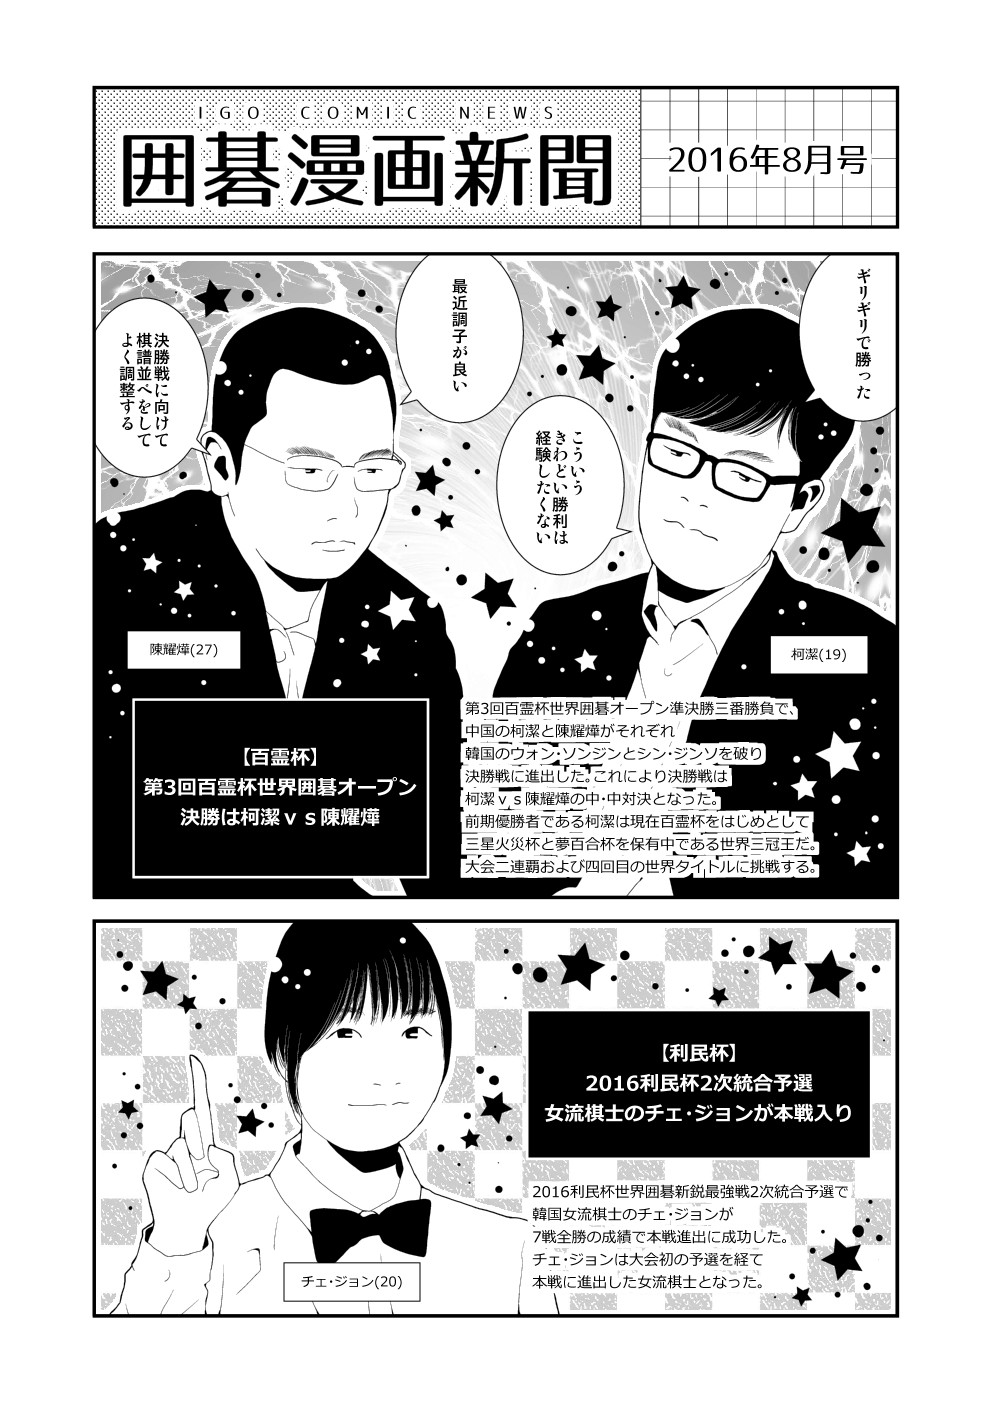 囲碁漫画新聞 16年8月号 韓国語版 中国語版有り Nitro15